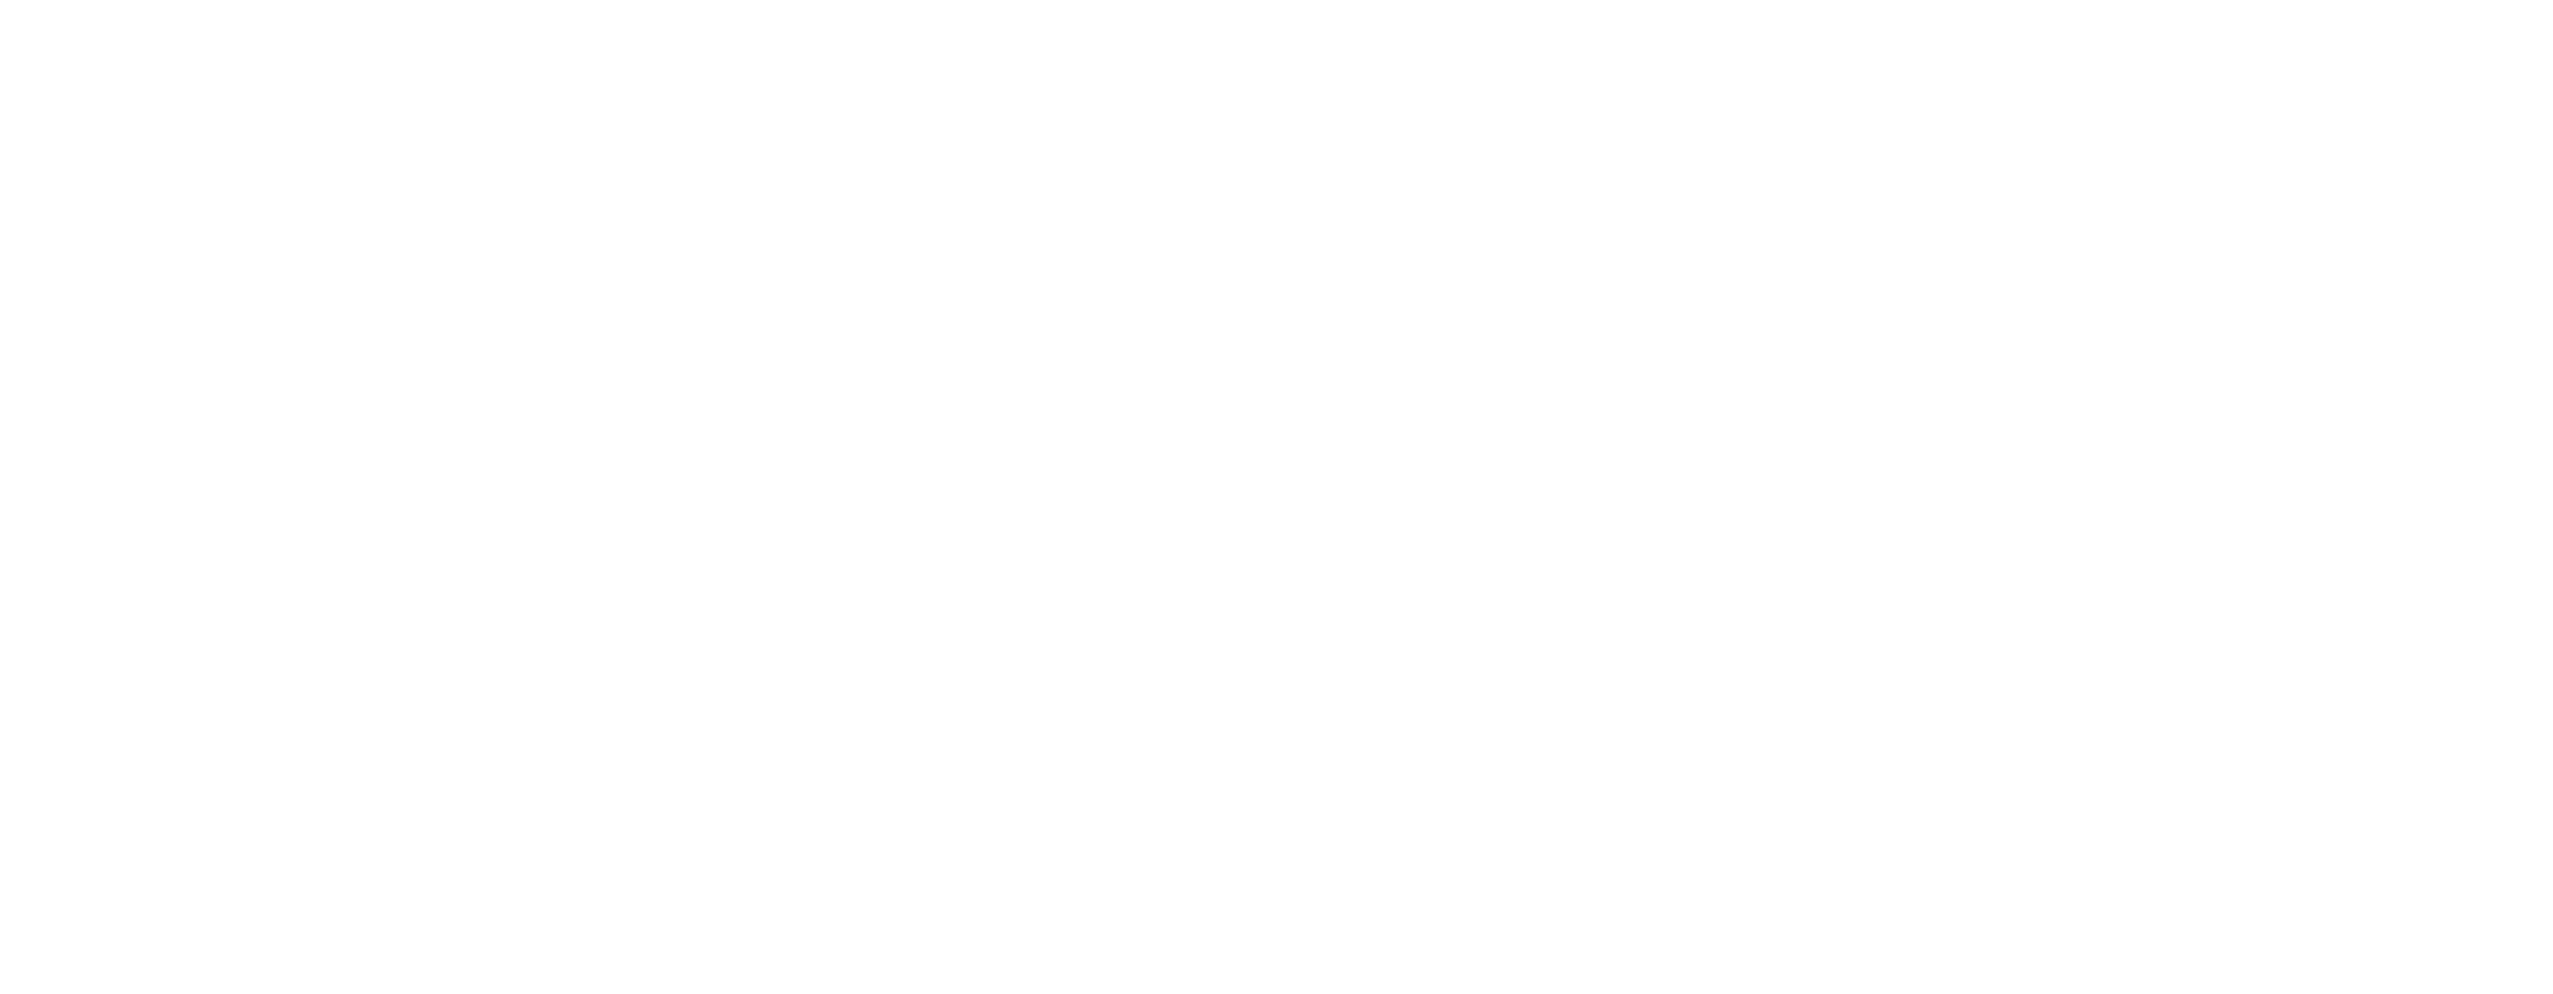 LANGUAGE_ESSENTIALS_logo_white